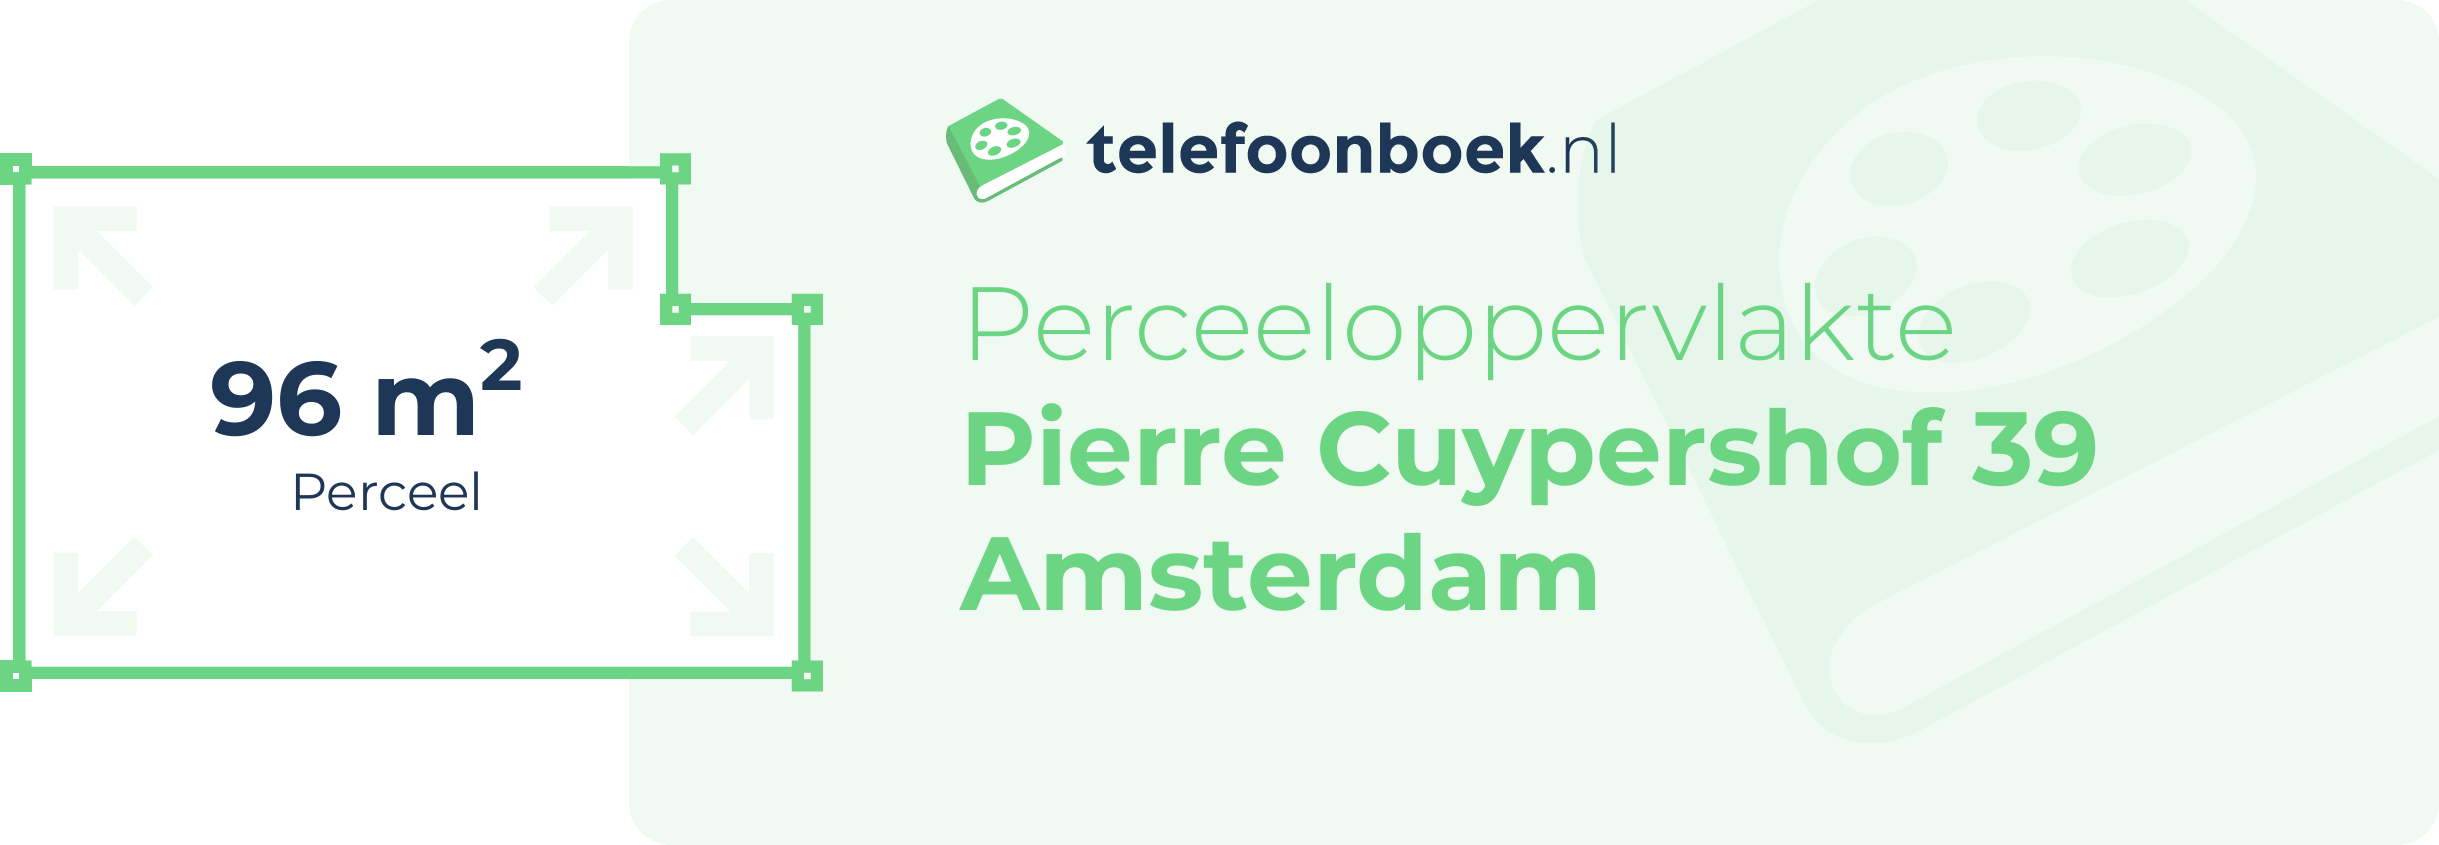 Perceeloppervlakte Pierre Cuypershof 39 Amsterdam